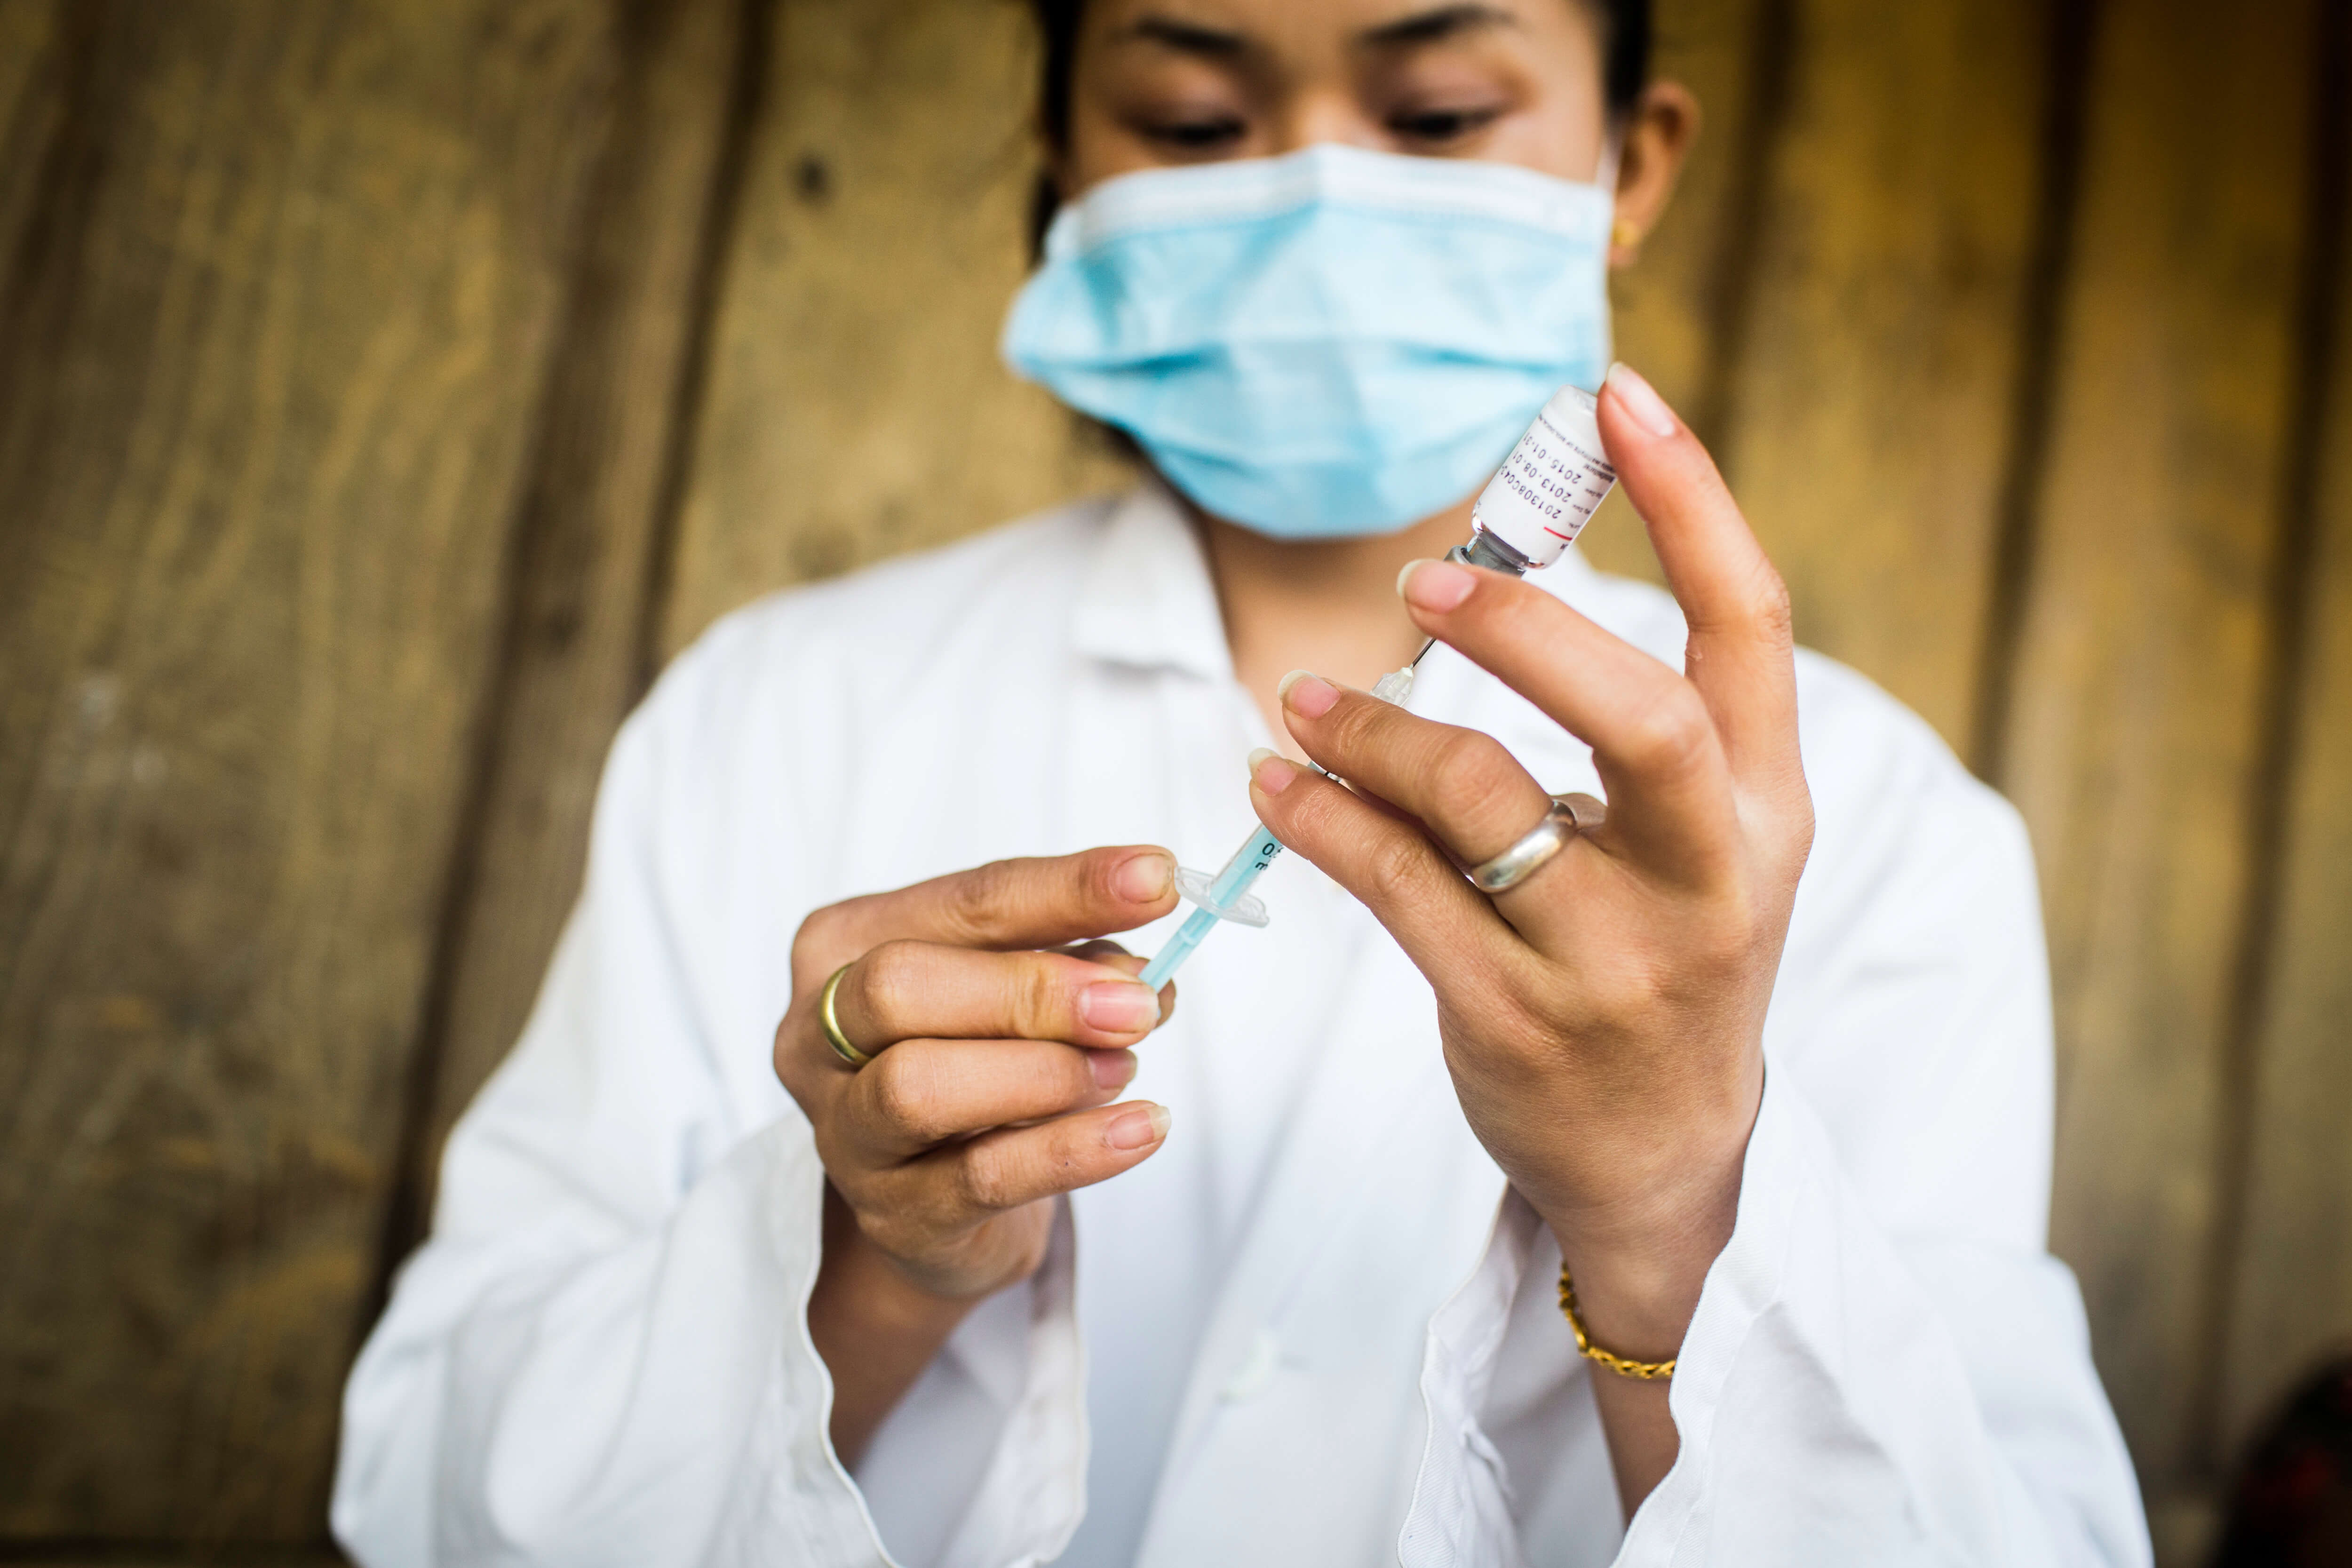 A healthworker in Laos prepares a vaccine. PATH/Aaron Joel Santos